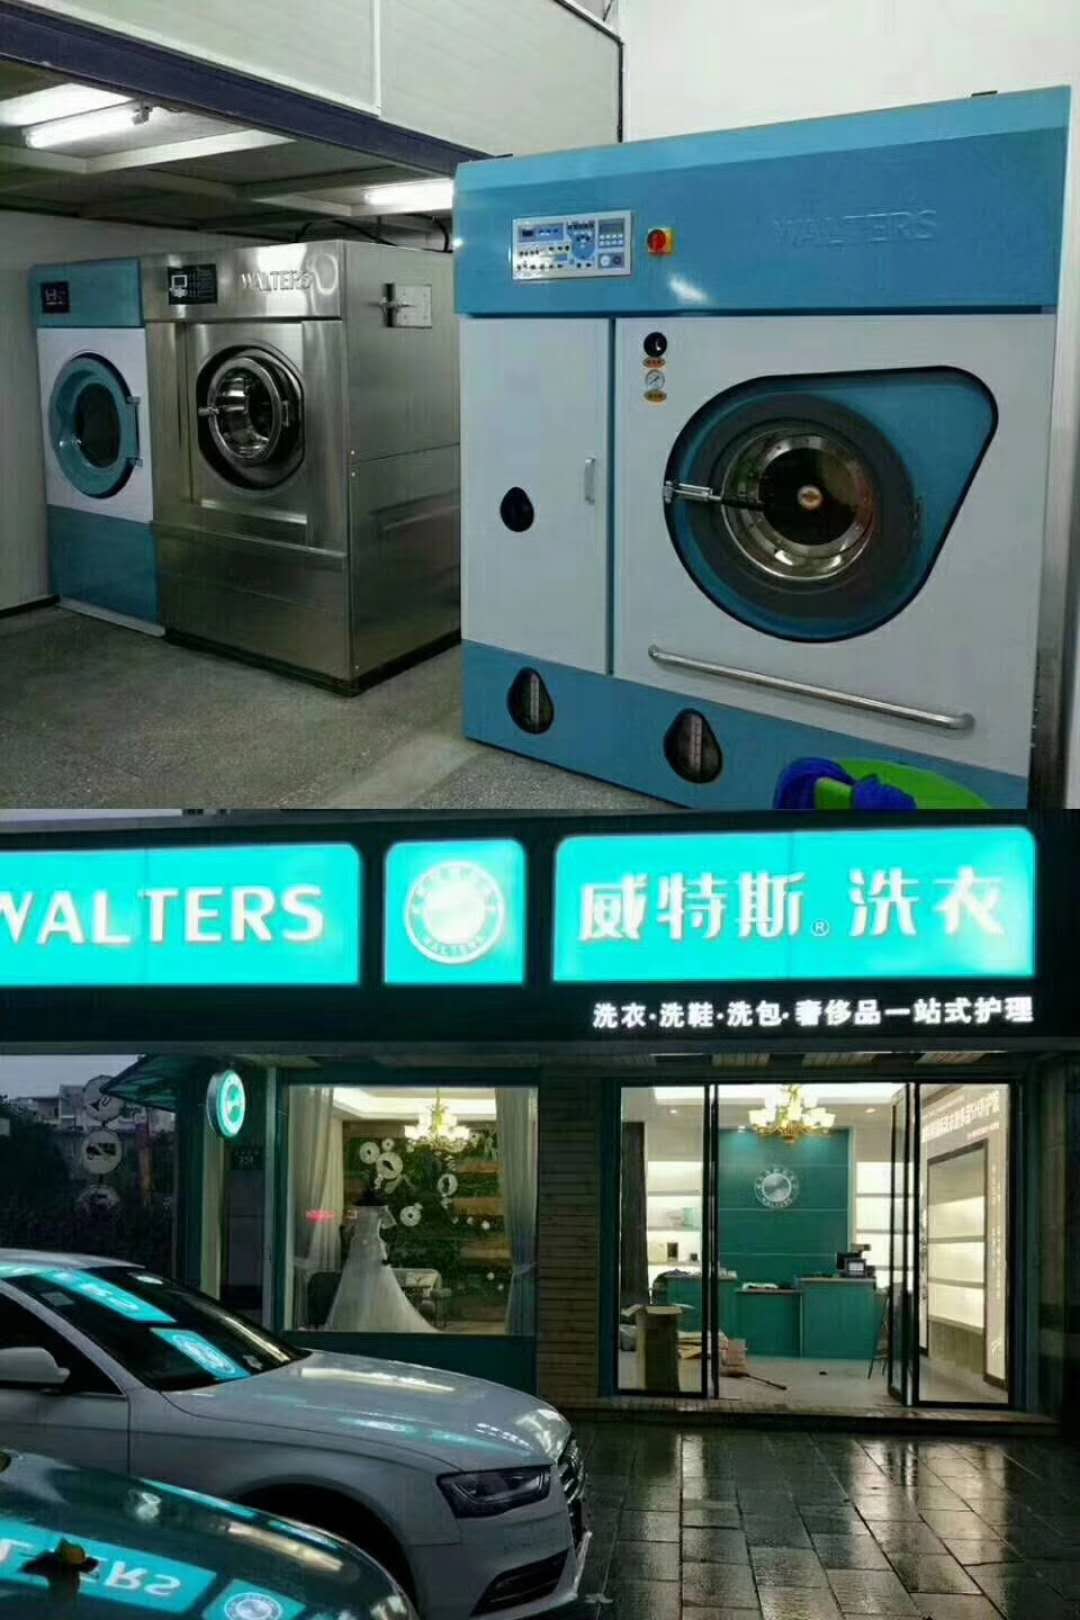 洗衣设备选哪个品牌好?威特斯干洗就不错